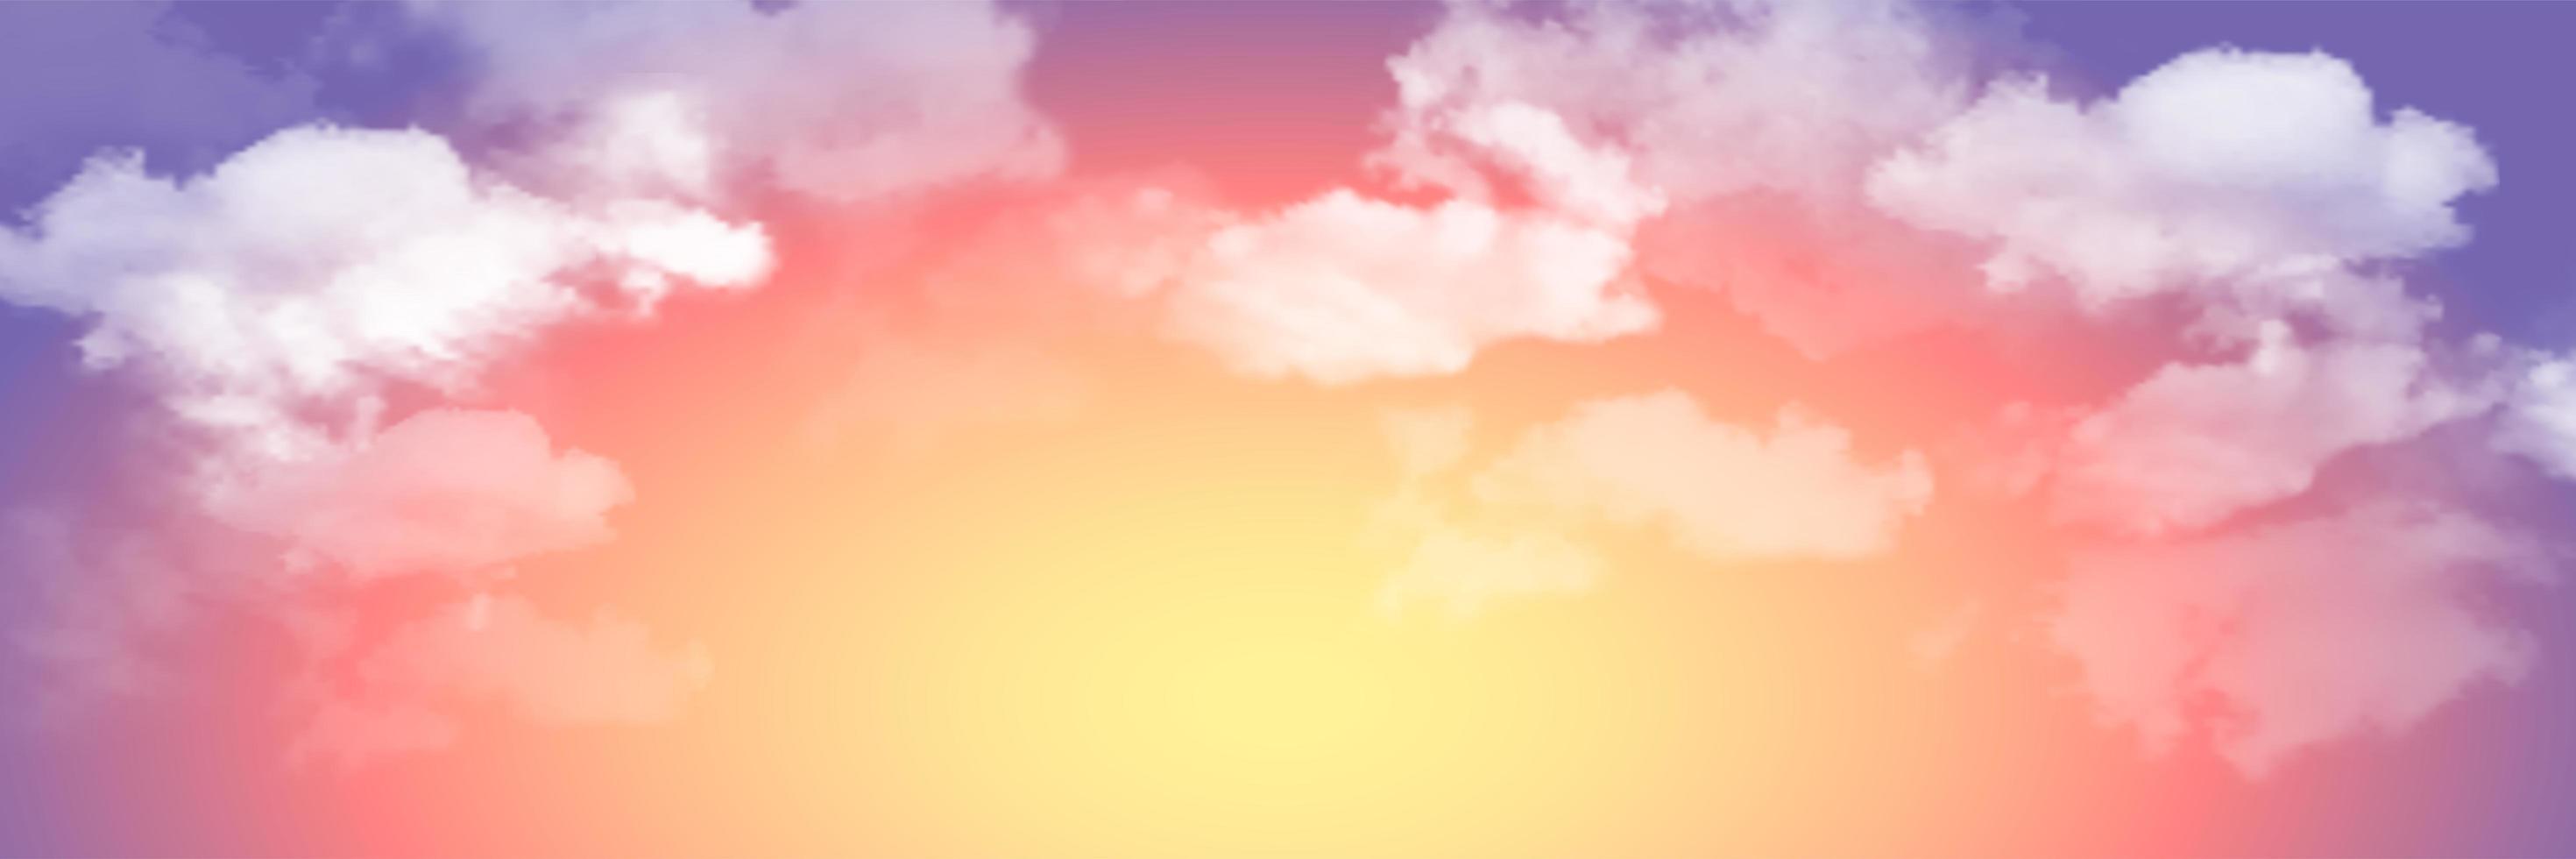 Vektorrealistische Himmelslandschaft. Himmel mit Wolken. Sonnenuntergang. vektor